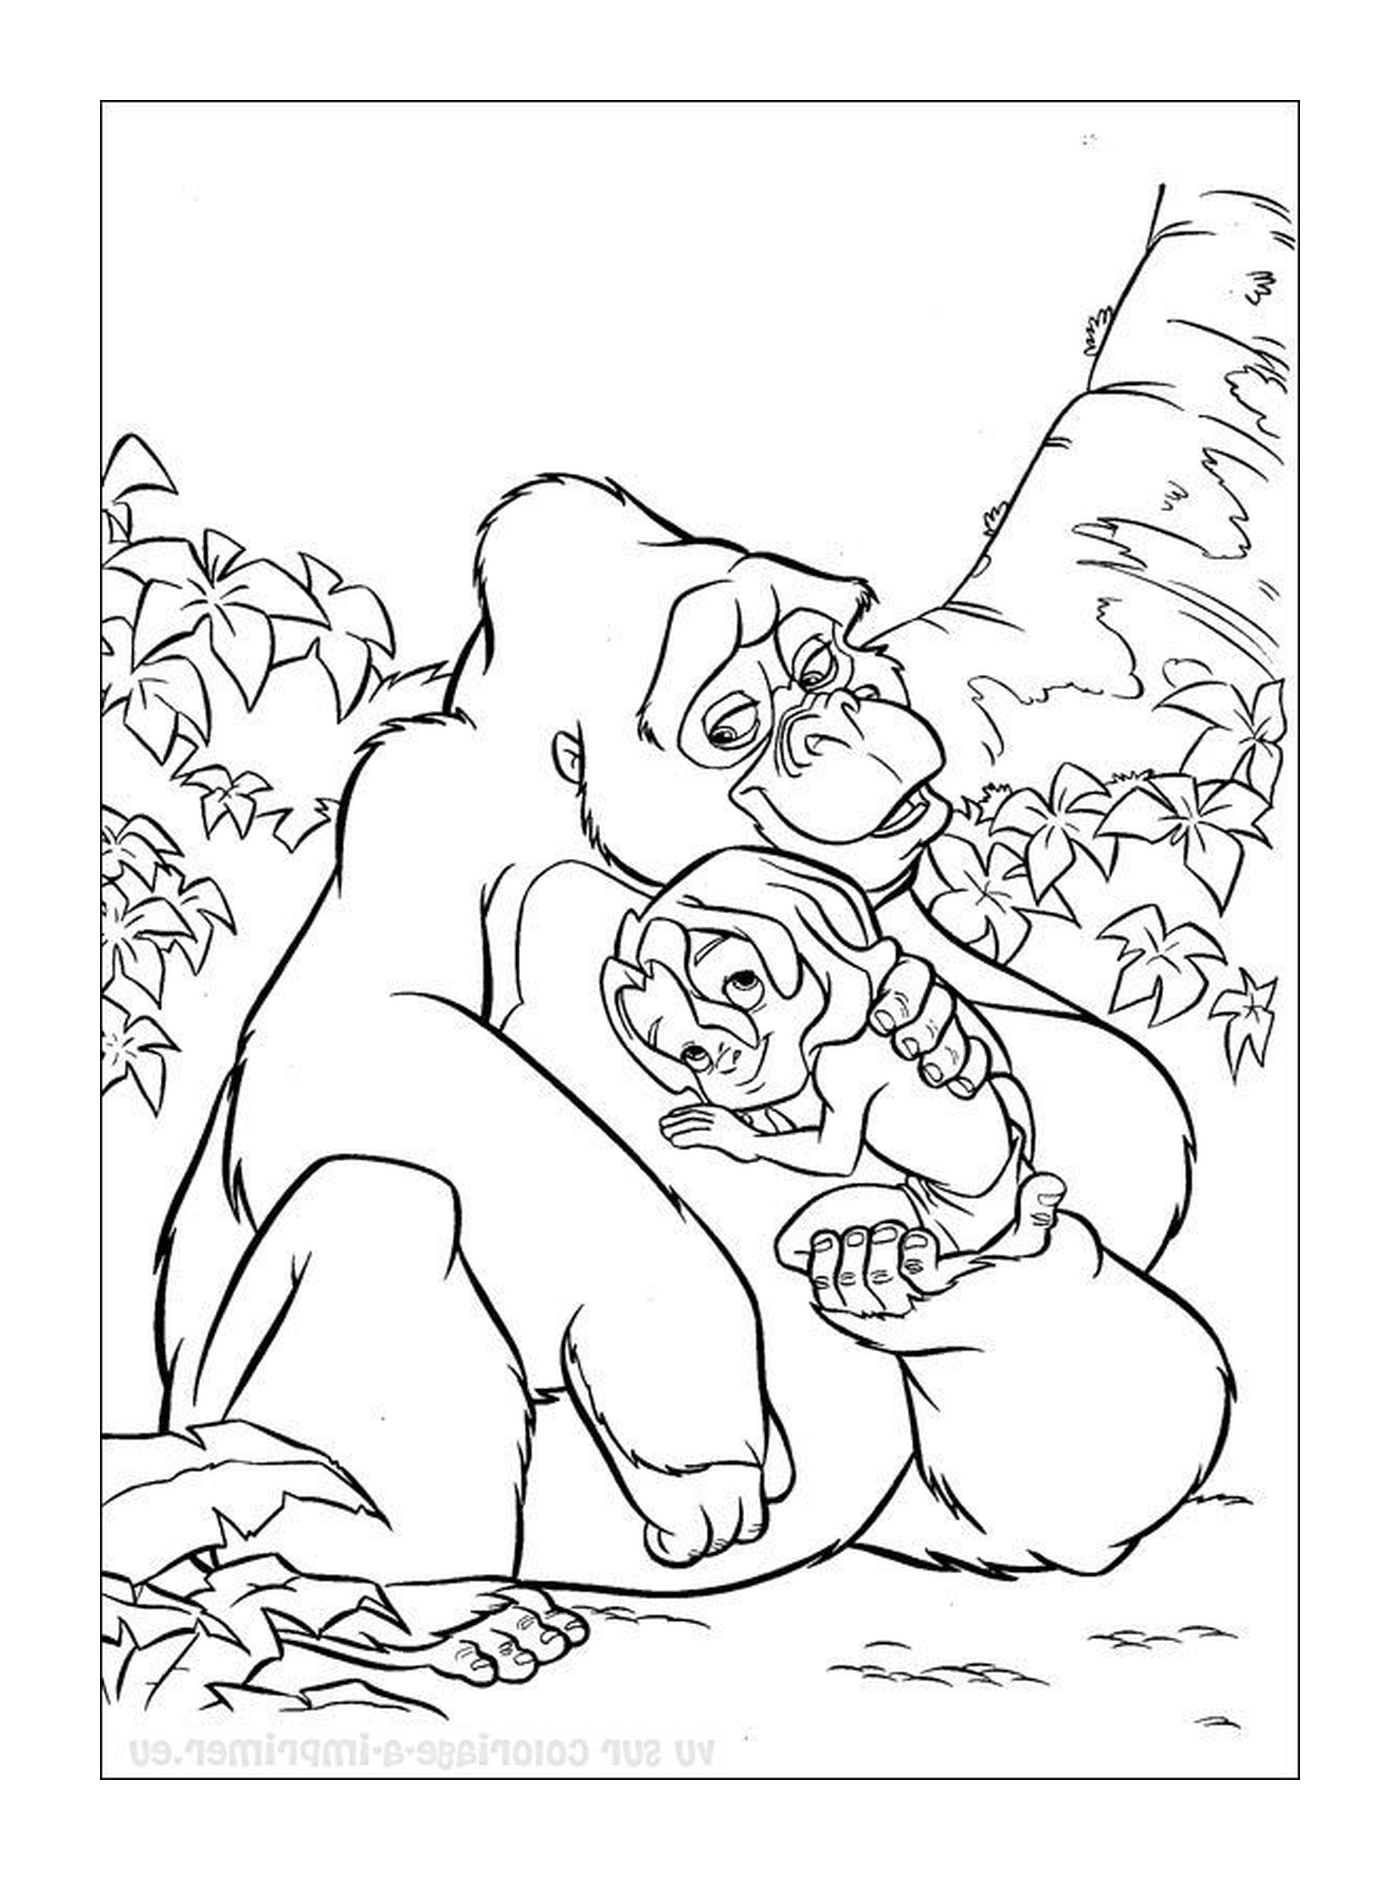  Gorila segurando um gorila bebê em seus braços 